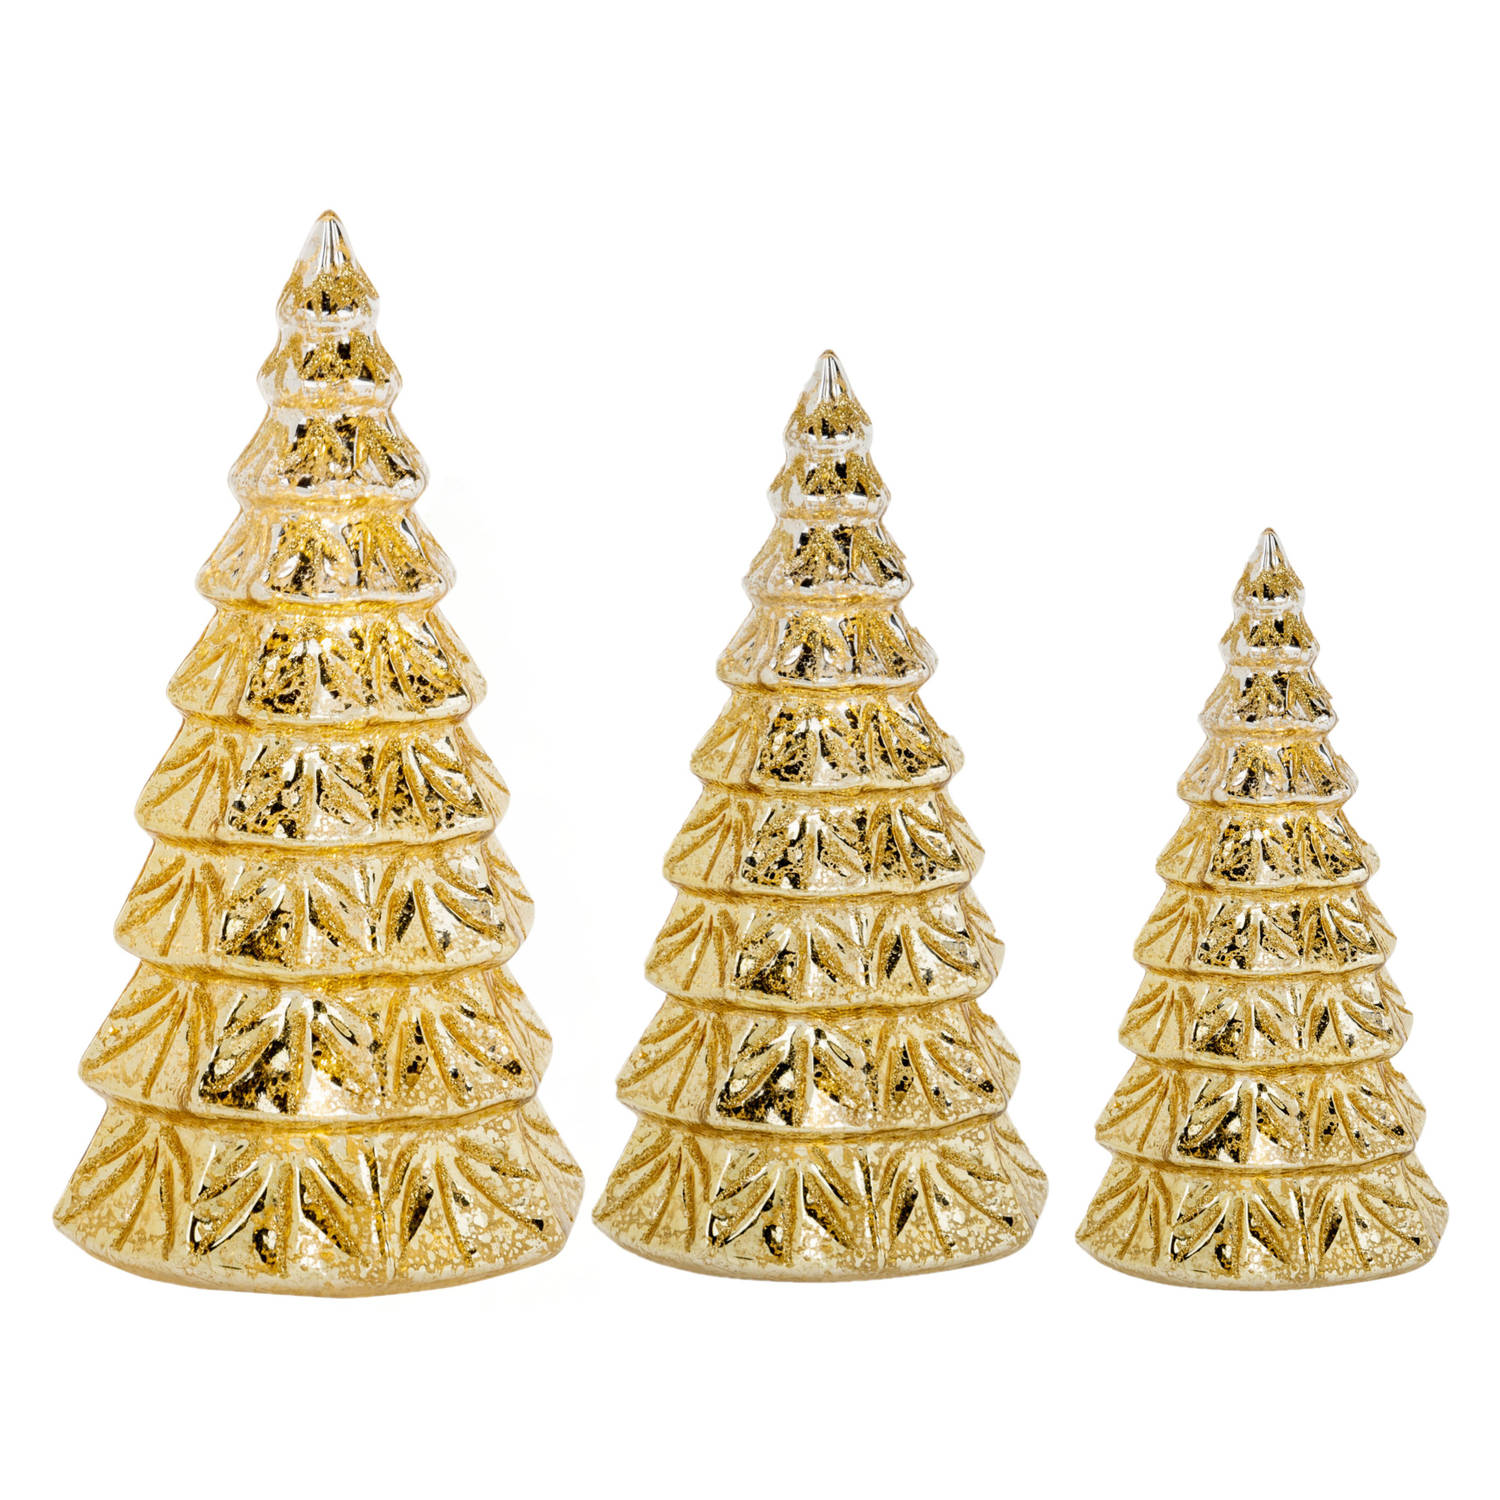 3x stuks led kaarsen kerstboom kaarsen goud H15 cm, H19 cm en H23 cm LED kaarsen